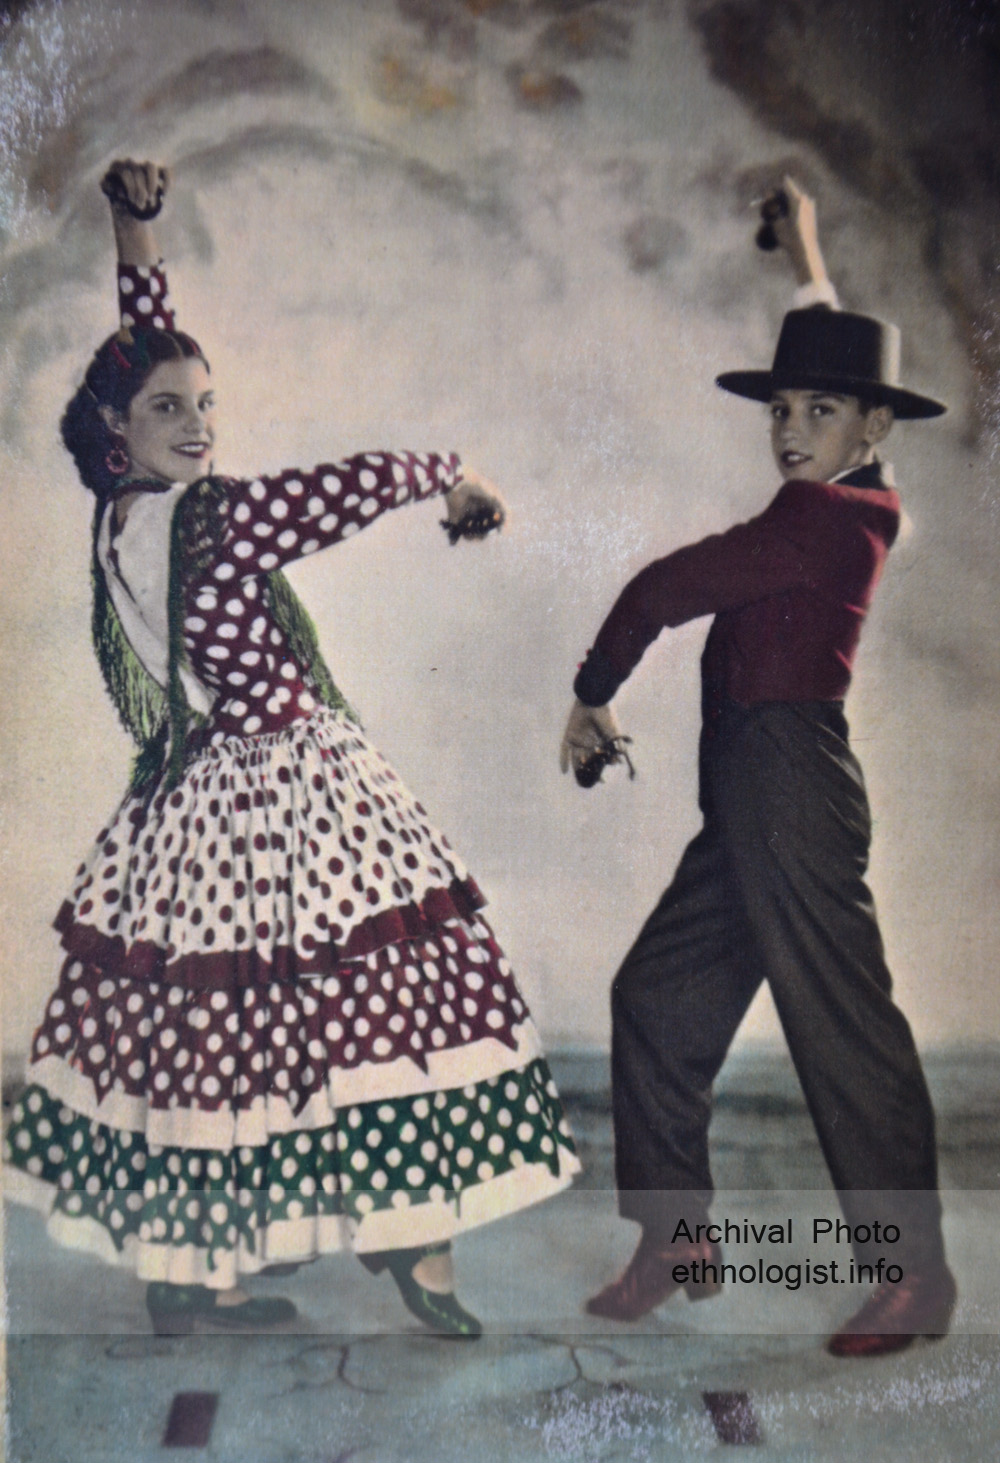 Fermín Barnó se svou sestrou Soledad. Archivní fotografie